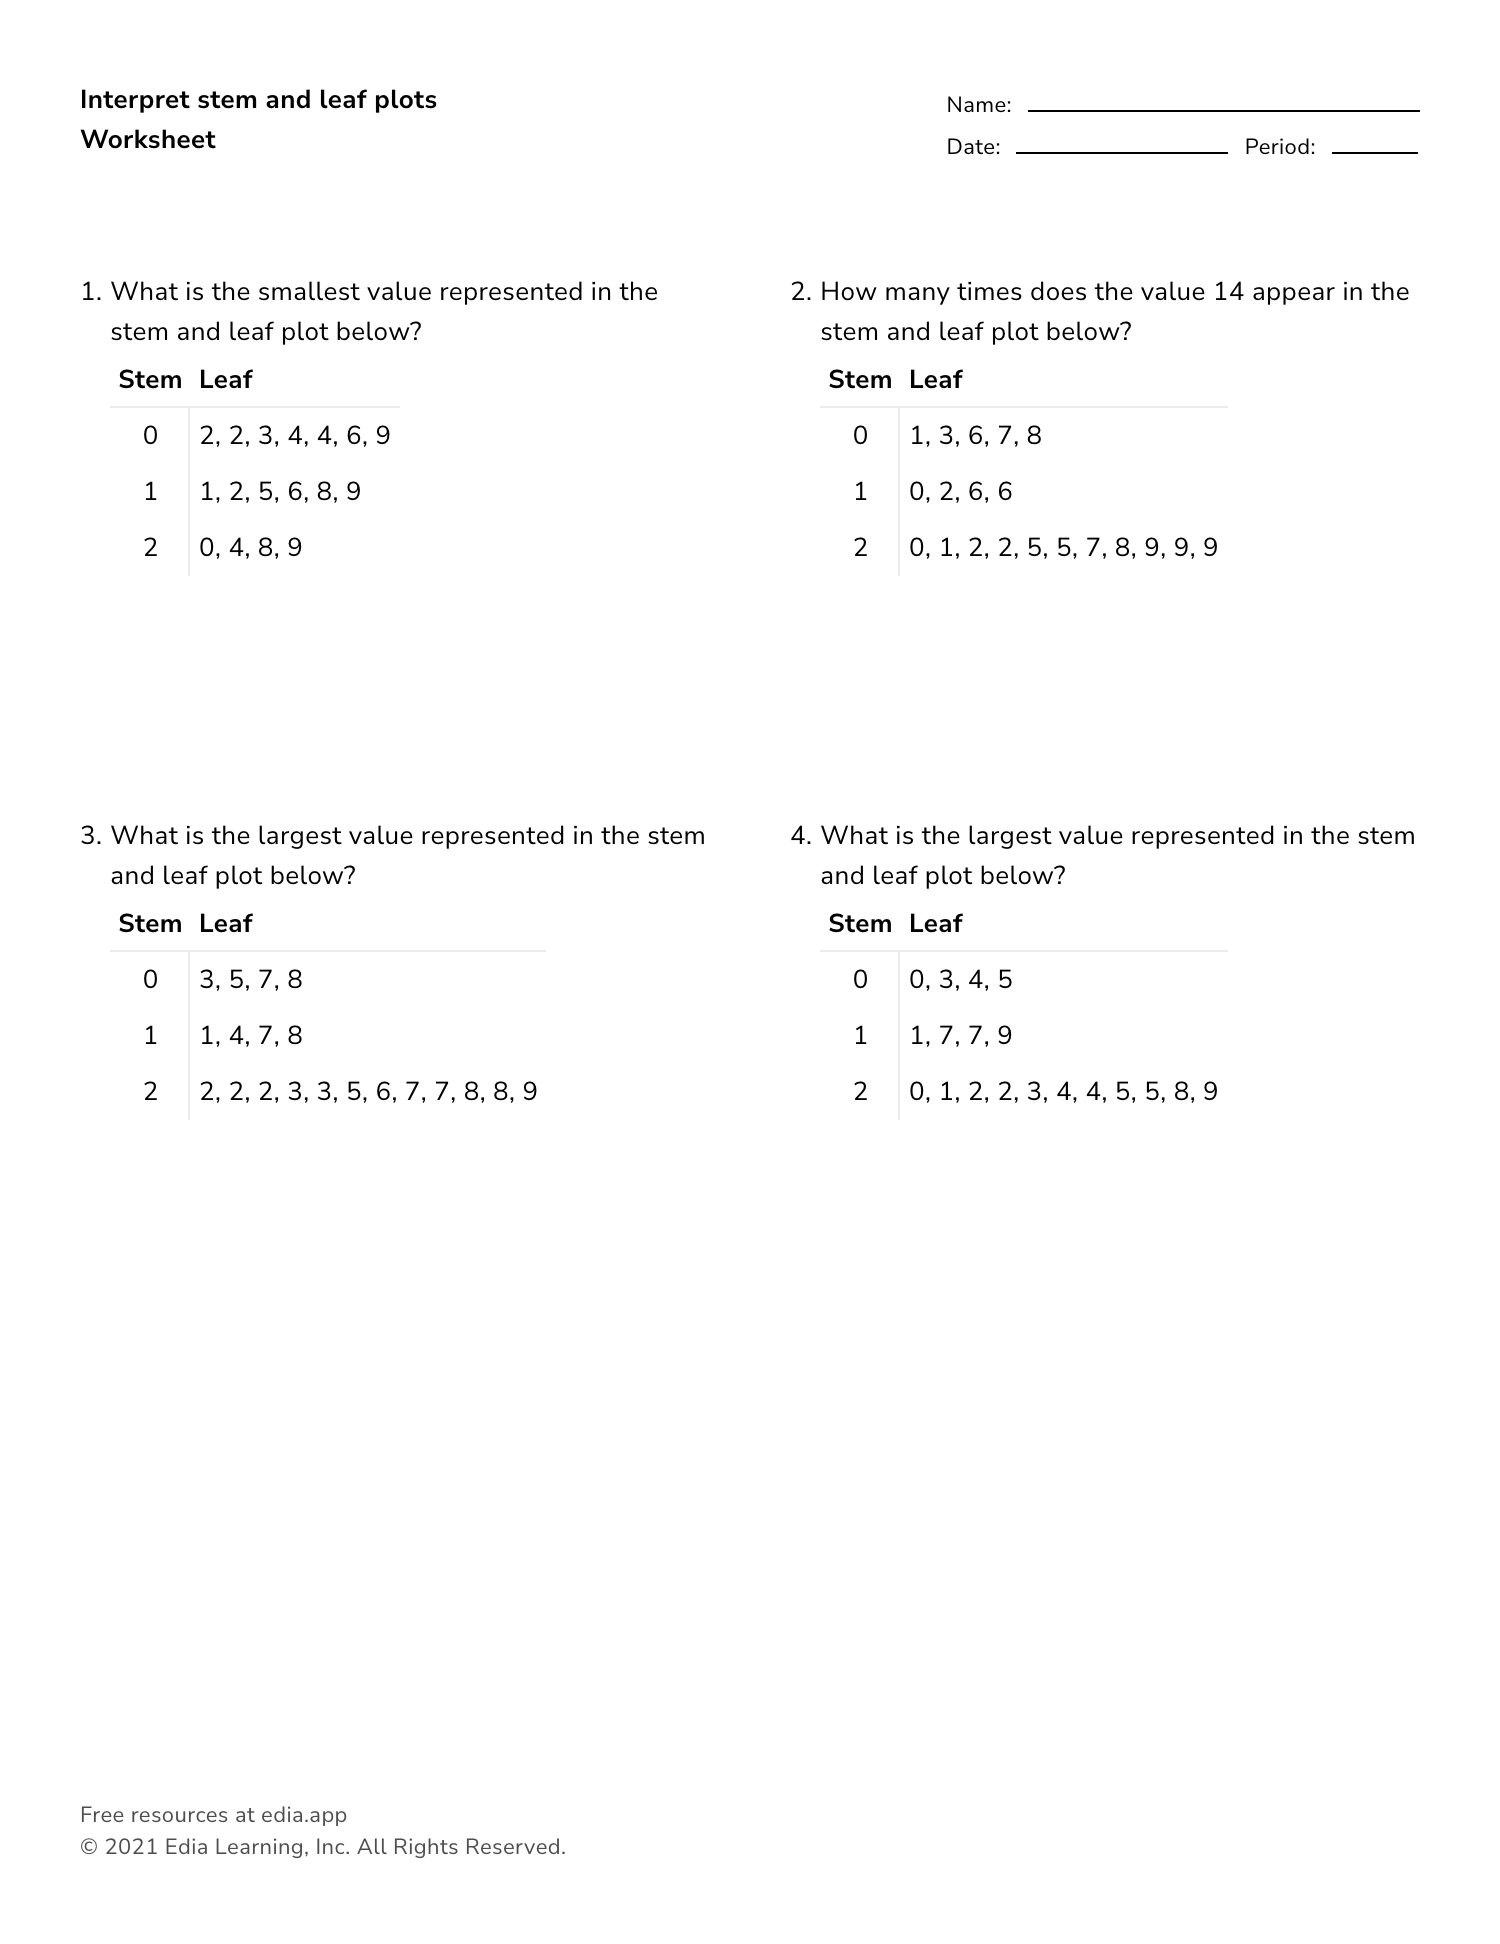 Interpret Stem And Leaf Plots - Worksheet Regarding Stem And Leaf Plots Worksheet